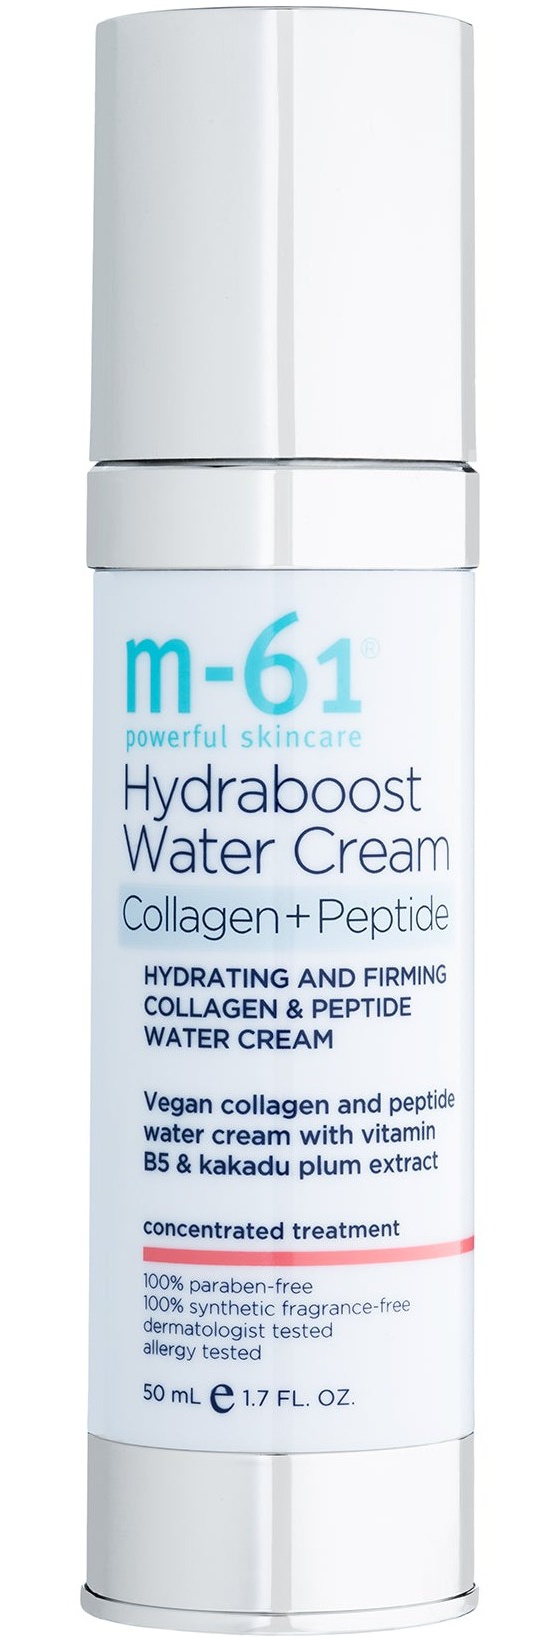 M-61 Hydraboost Collagen+peptide Water Cream